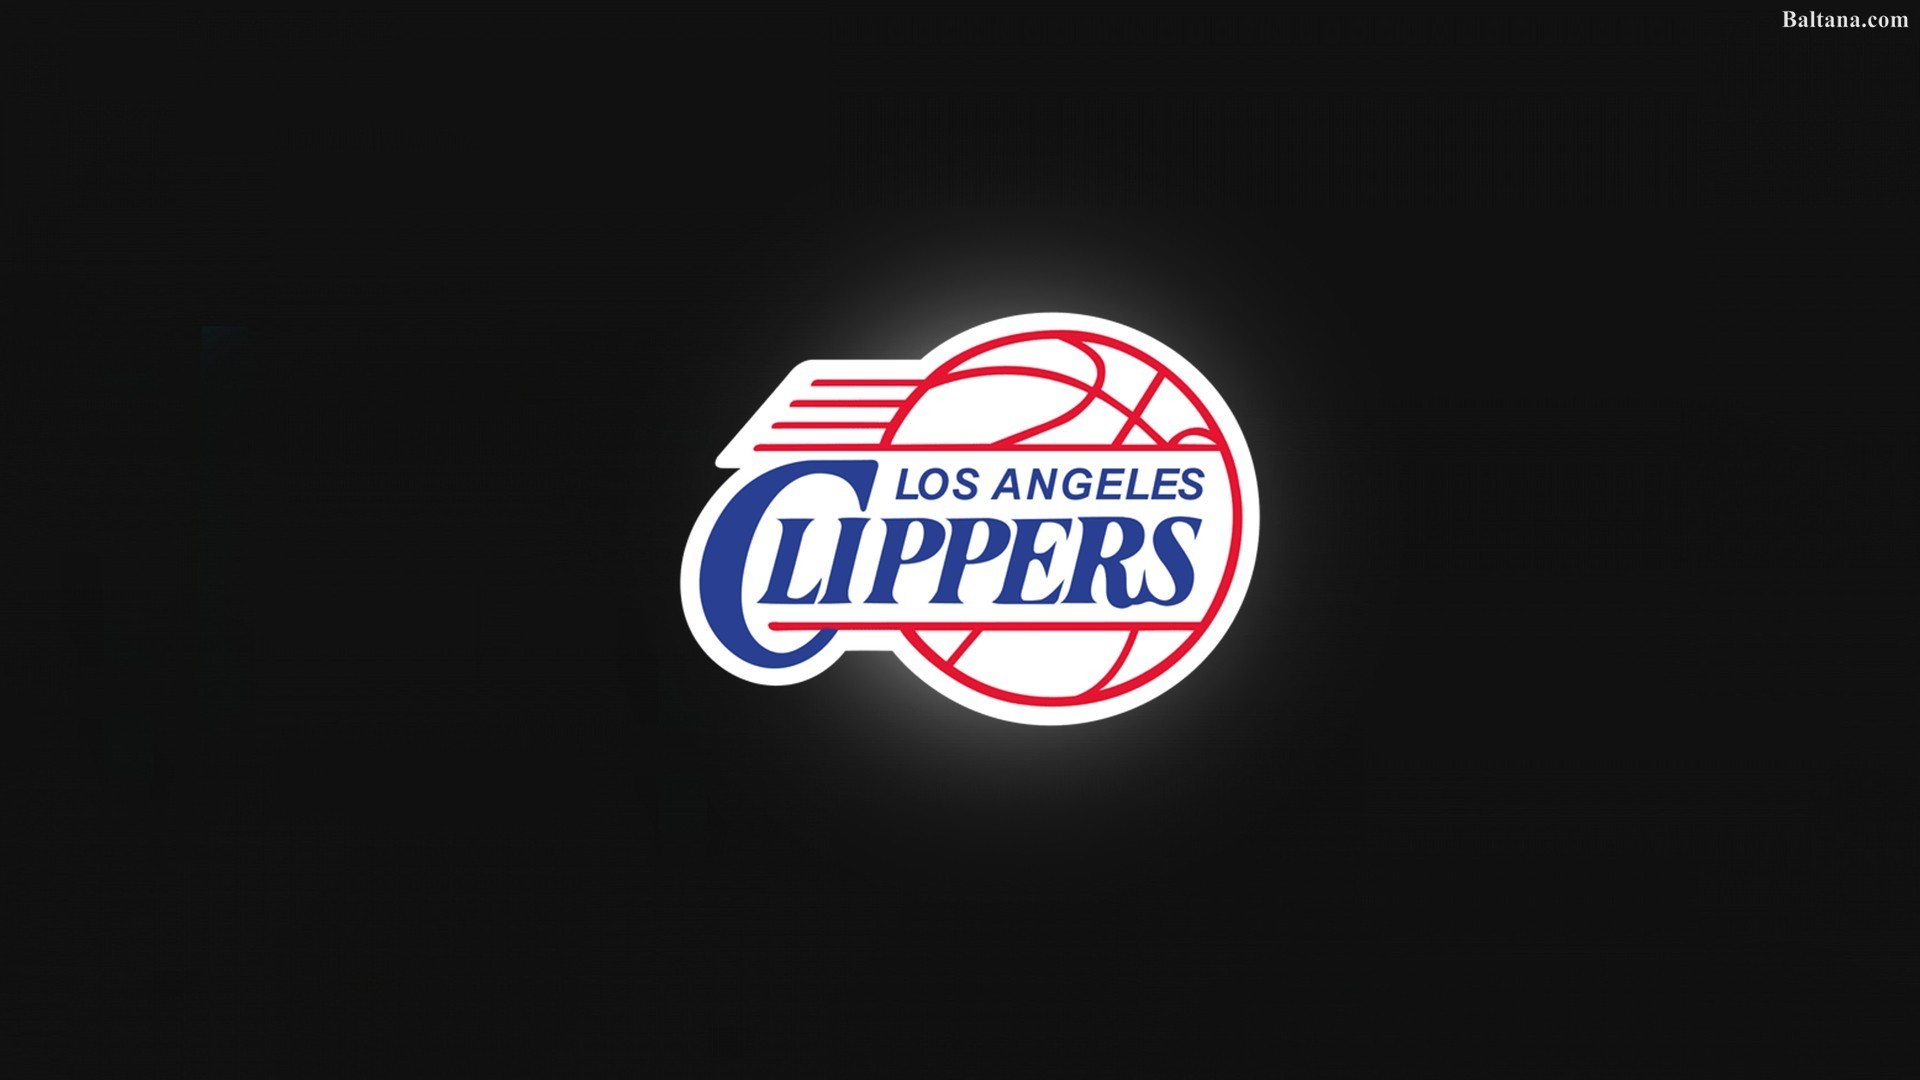 1920x1080 1936x2448 Lakers 3d Logo Wallpaper - 2018 Wallpapers HD | 3d logo, Wallpaper  and 3d